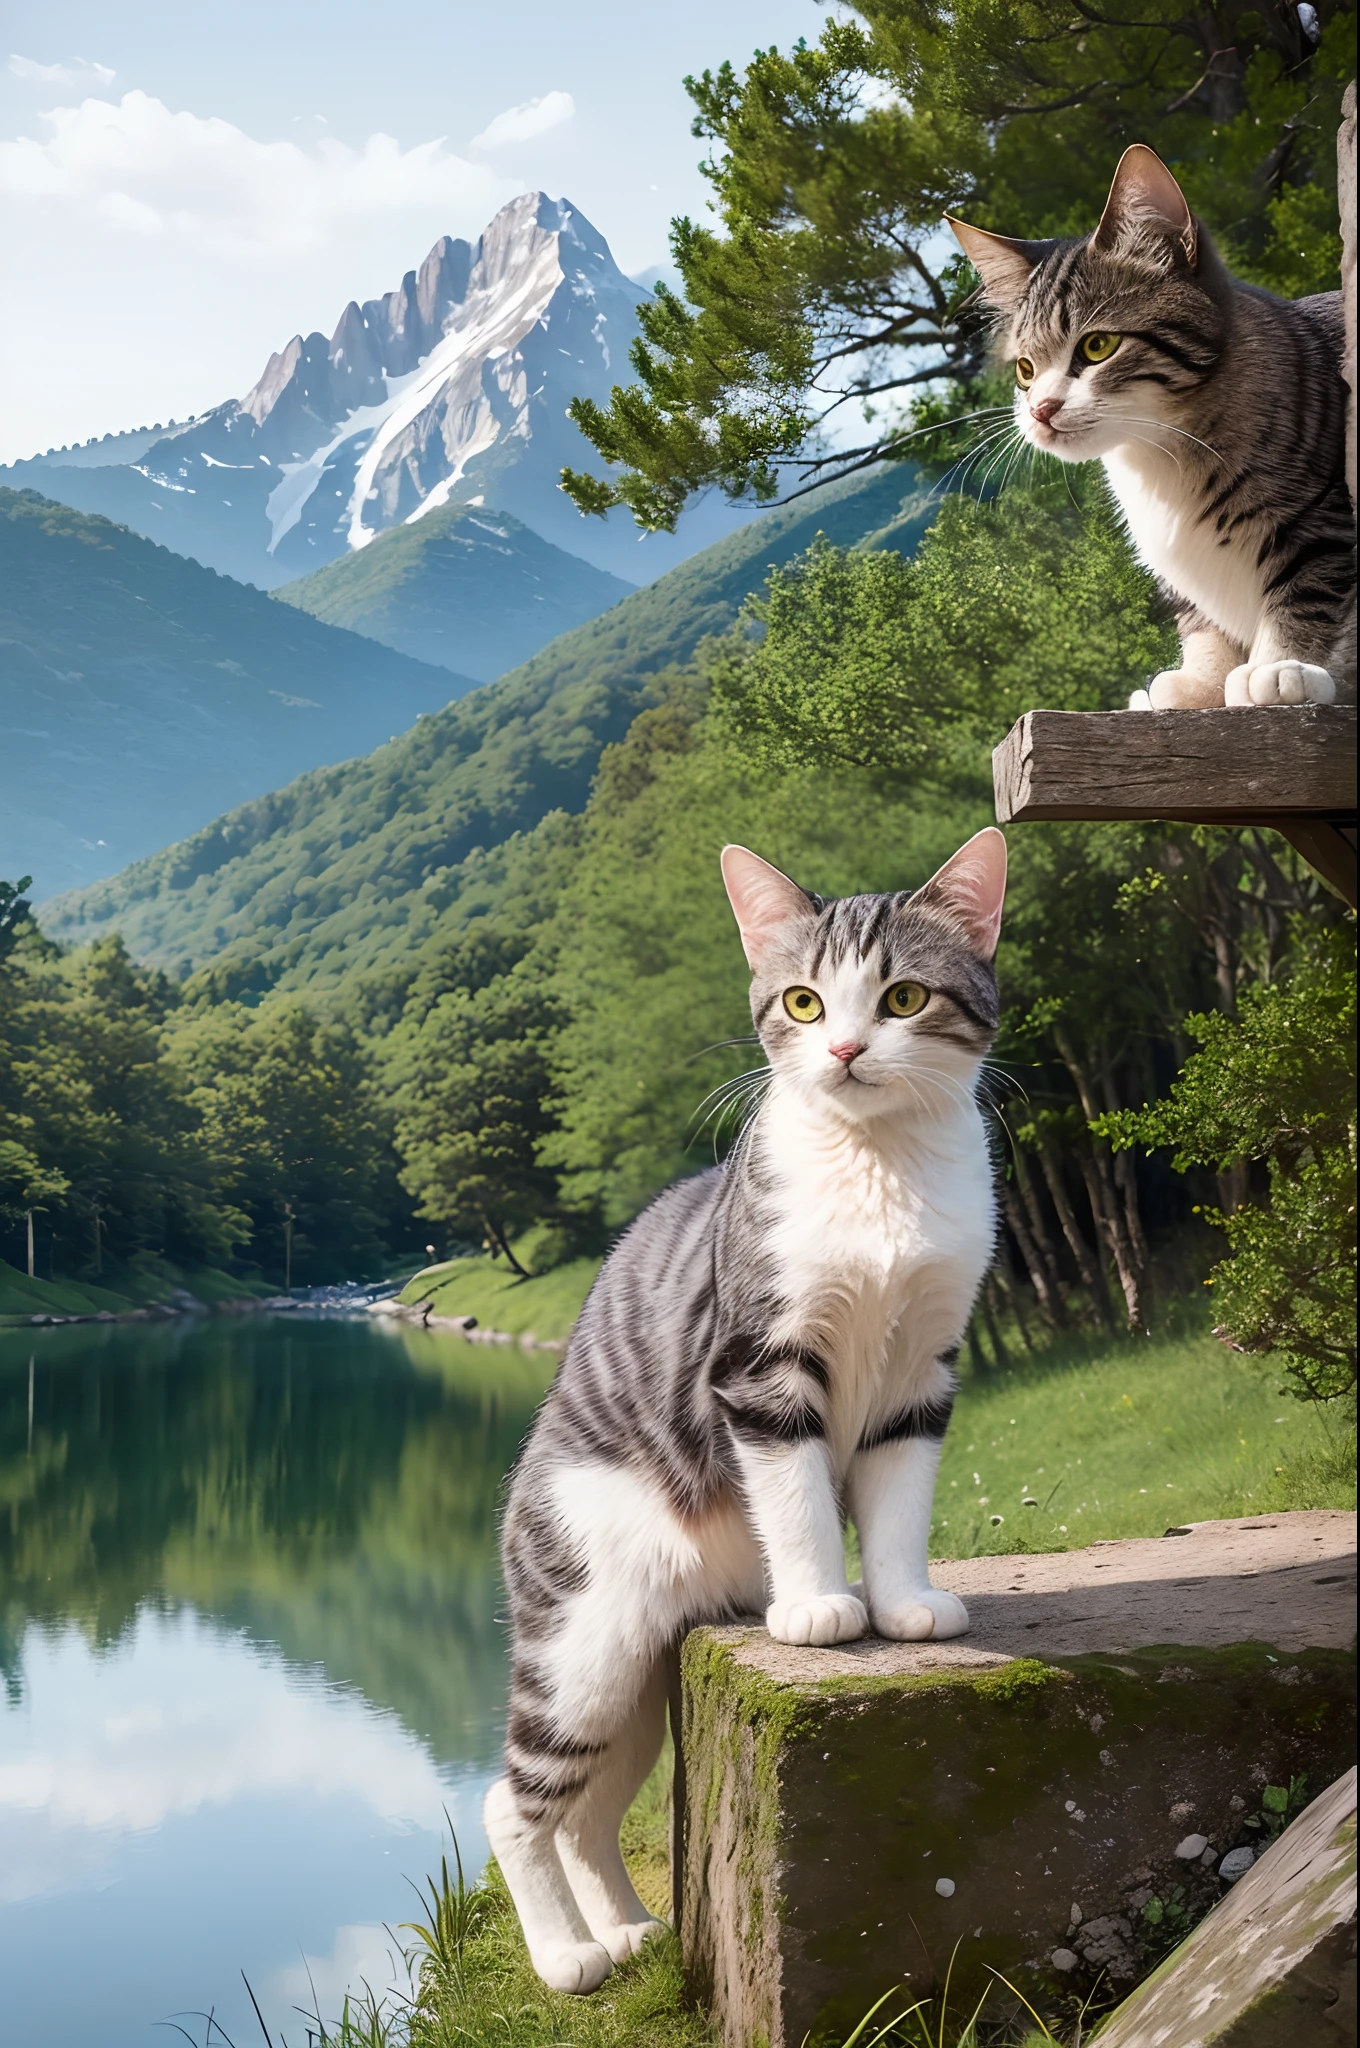 ((最高品質、傑作、写真のような:1.4、8Kで))、背後のカトゥーンと湖)、詳細な猫、繊細で美しい猫、美しい景色